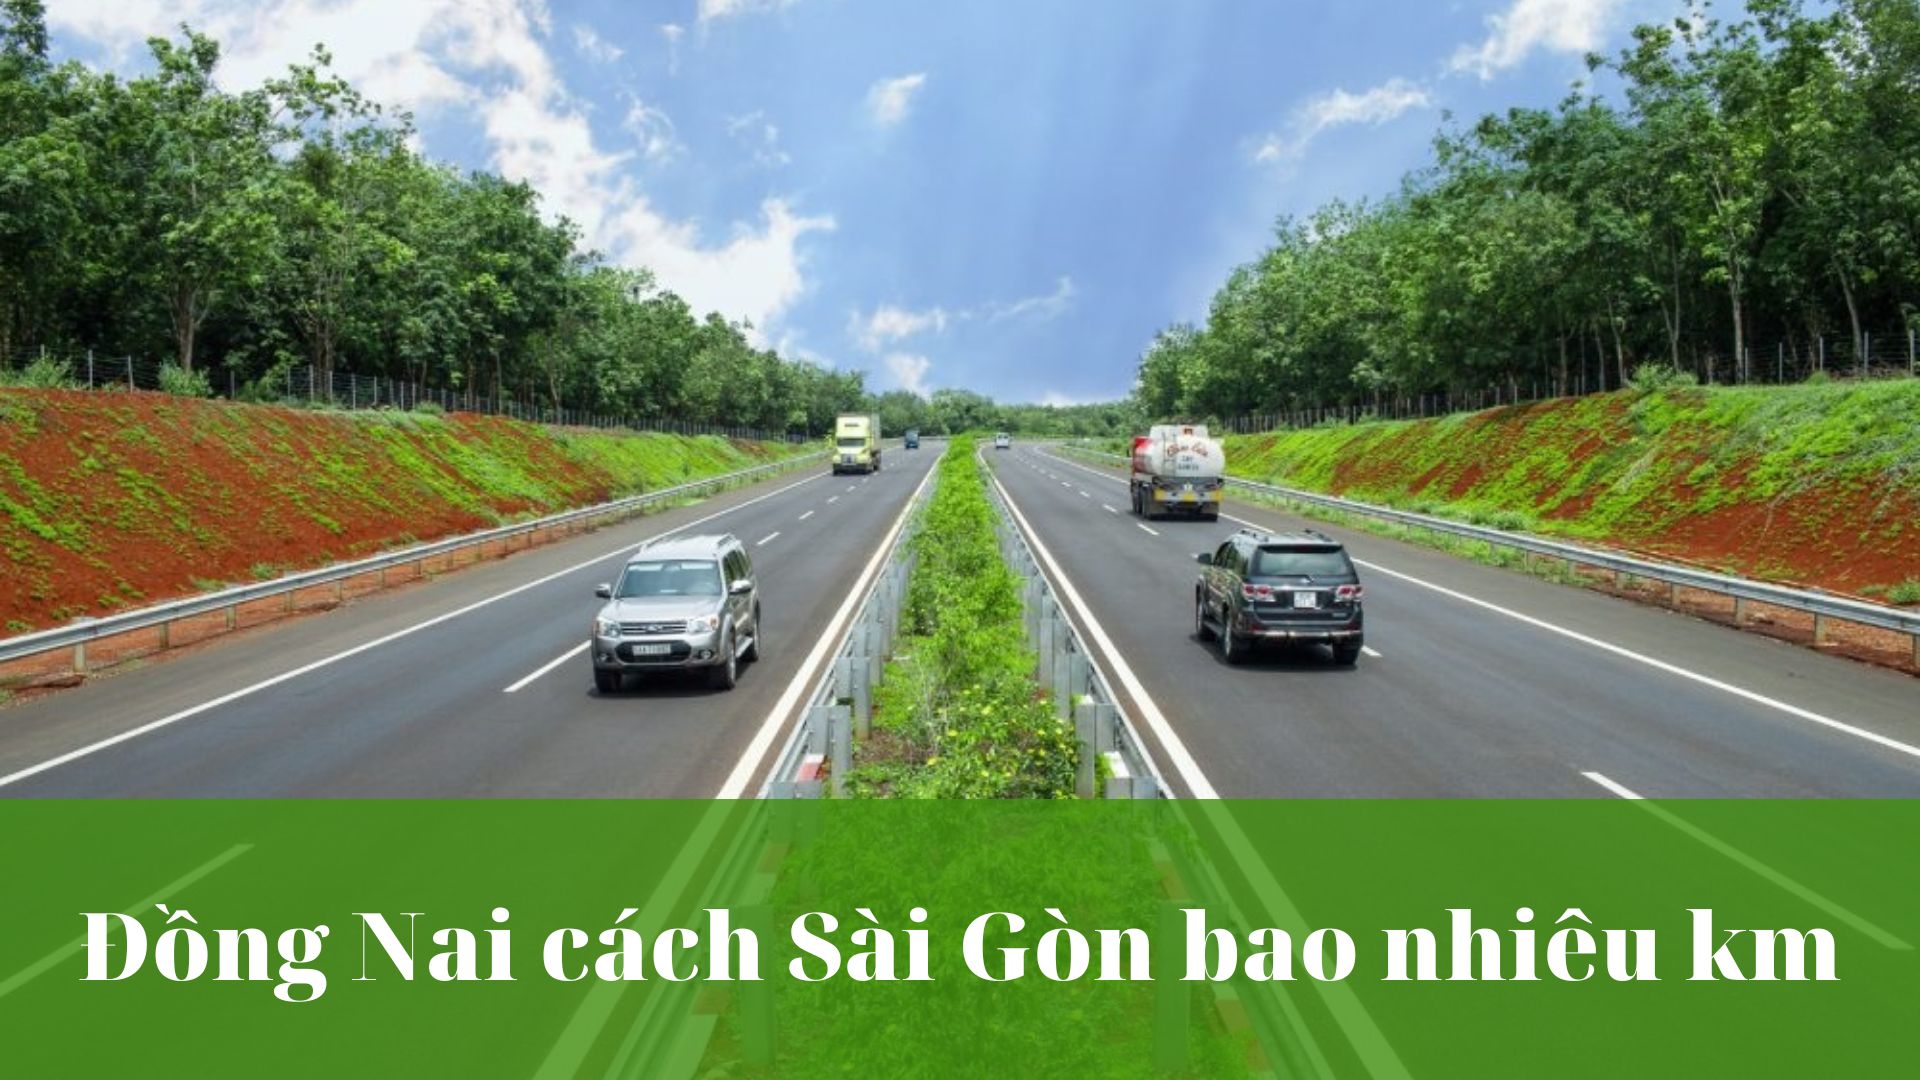 Đồng Nai cách Sài Gòn bao nhiêu km?